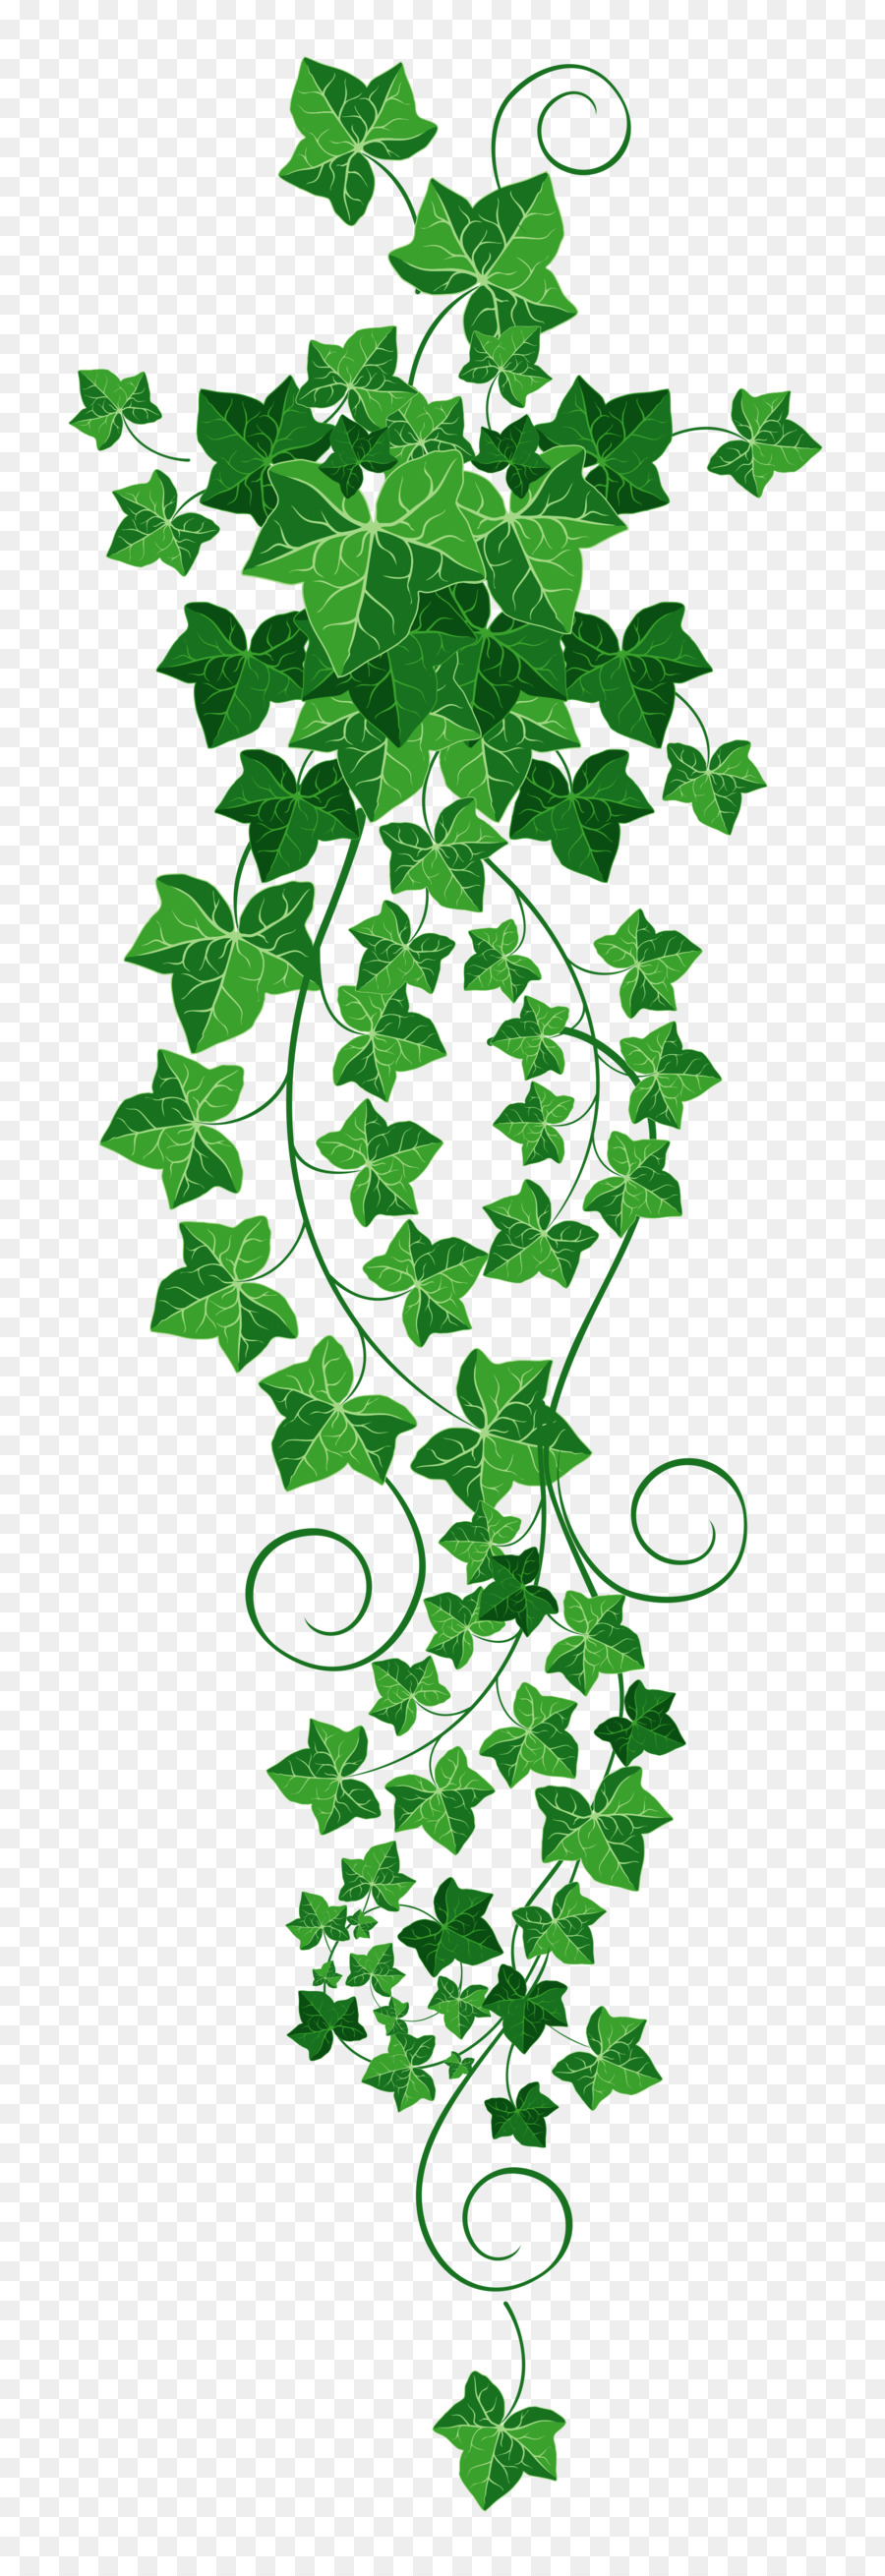 Common ivy Vine Clip art - Vine Cliparts Transparent png download - 1795*5209 - Free Transparent Common Ivy png Download.